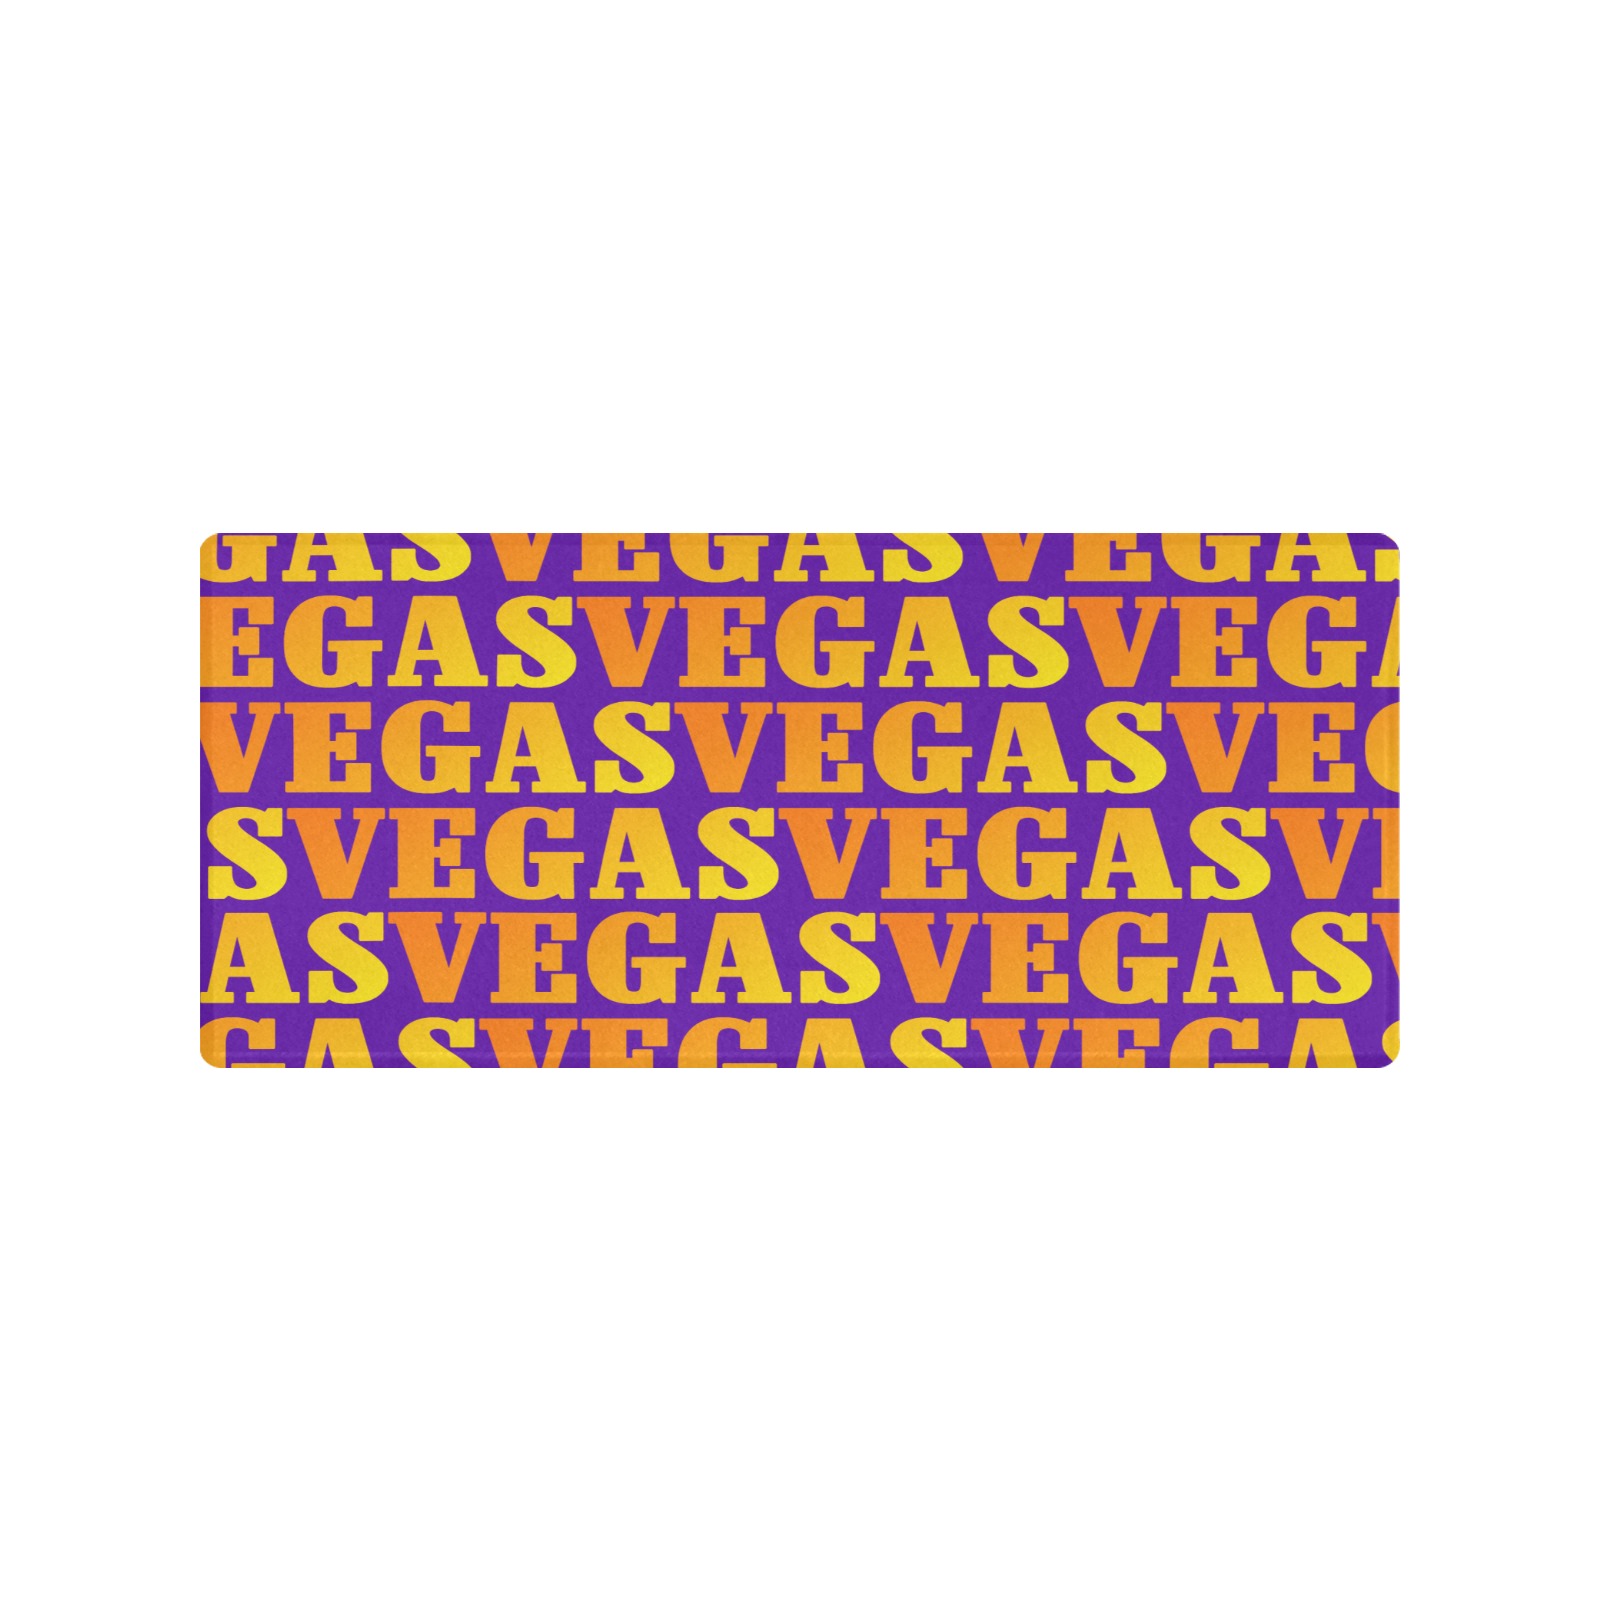 Golden VEGAS / Purple Gaming Mousepad (35"x16")